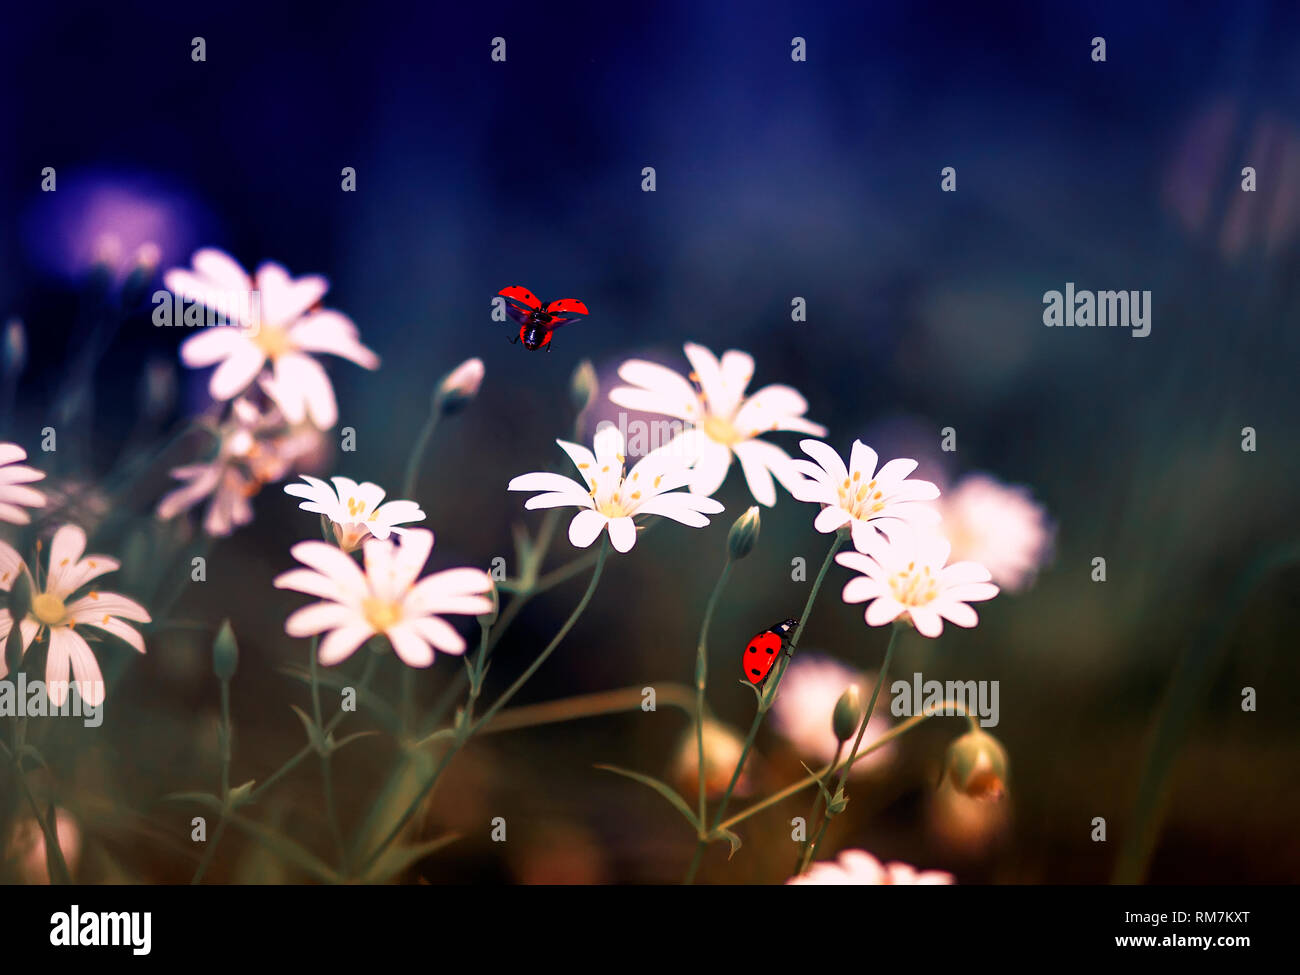 Wunderschönen natürlichen Hintergrund mit kleinen roten Marienkäfer fliegt und kriecht auf die zarten Blüten im Frühjahr flieder Abend Stockfoto